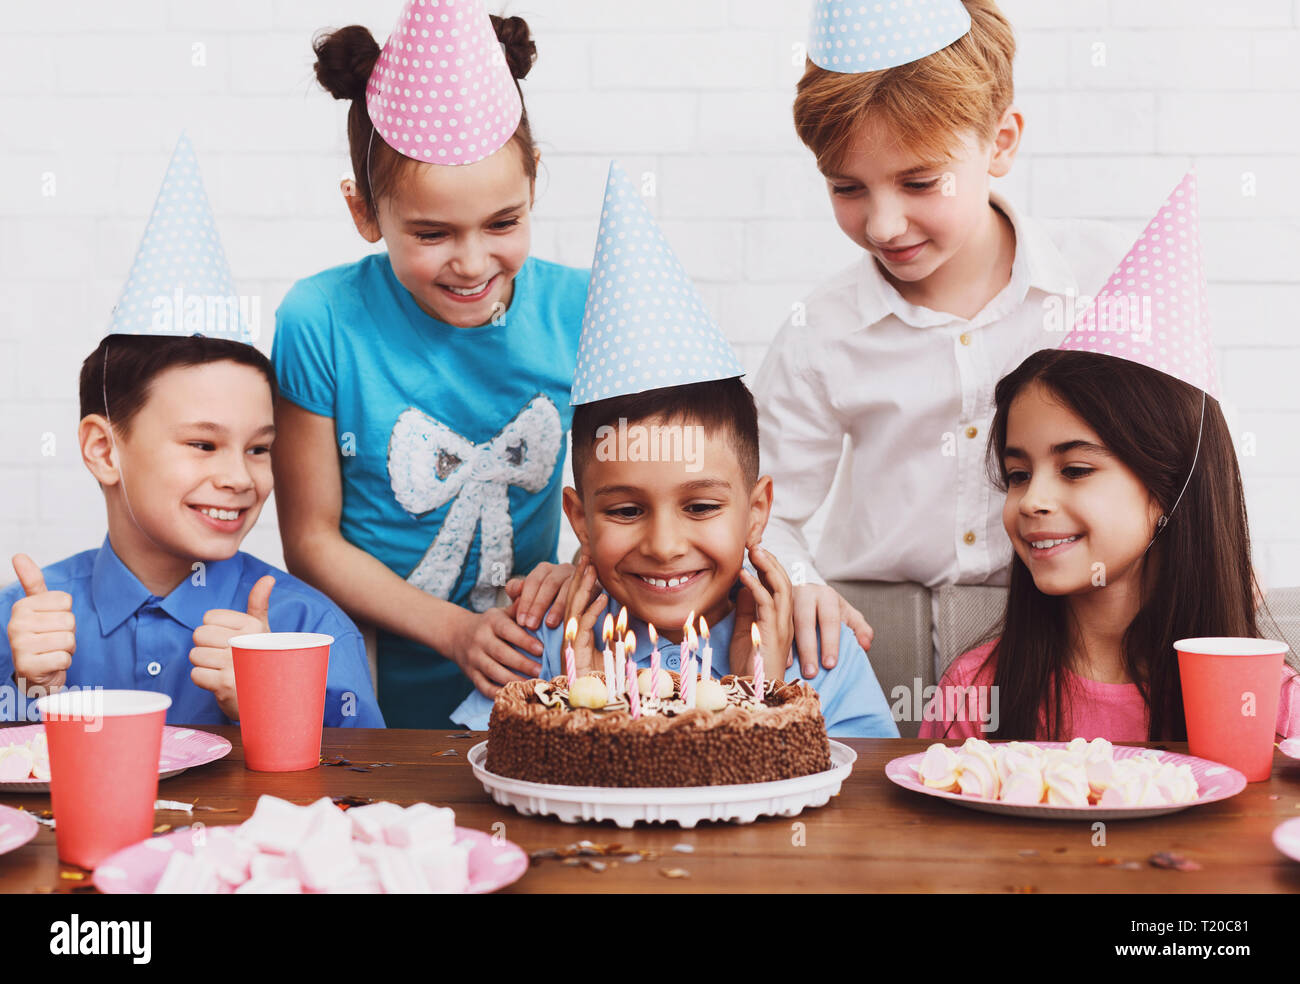 Happy Boy machen möchten, am Geburtstag Kuchen suchen, Party mit Freunden Stockfoto